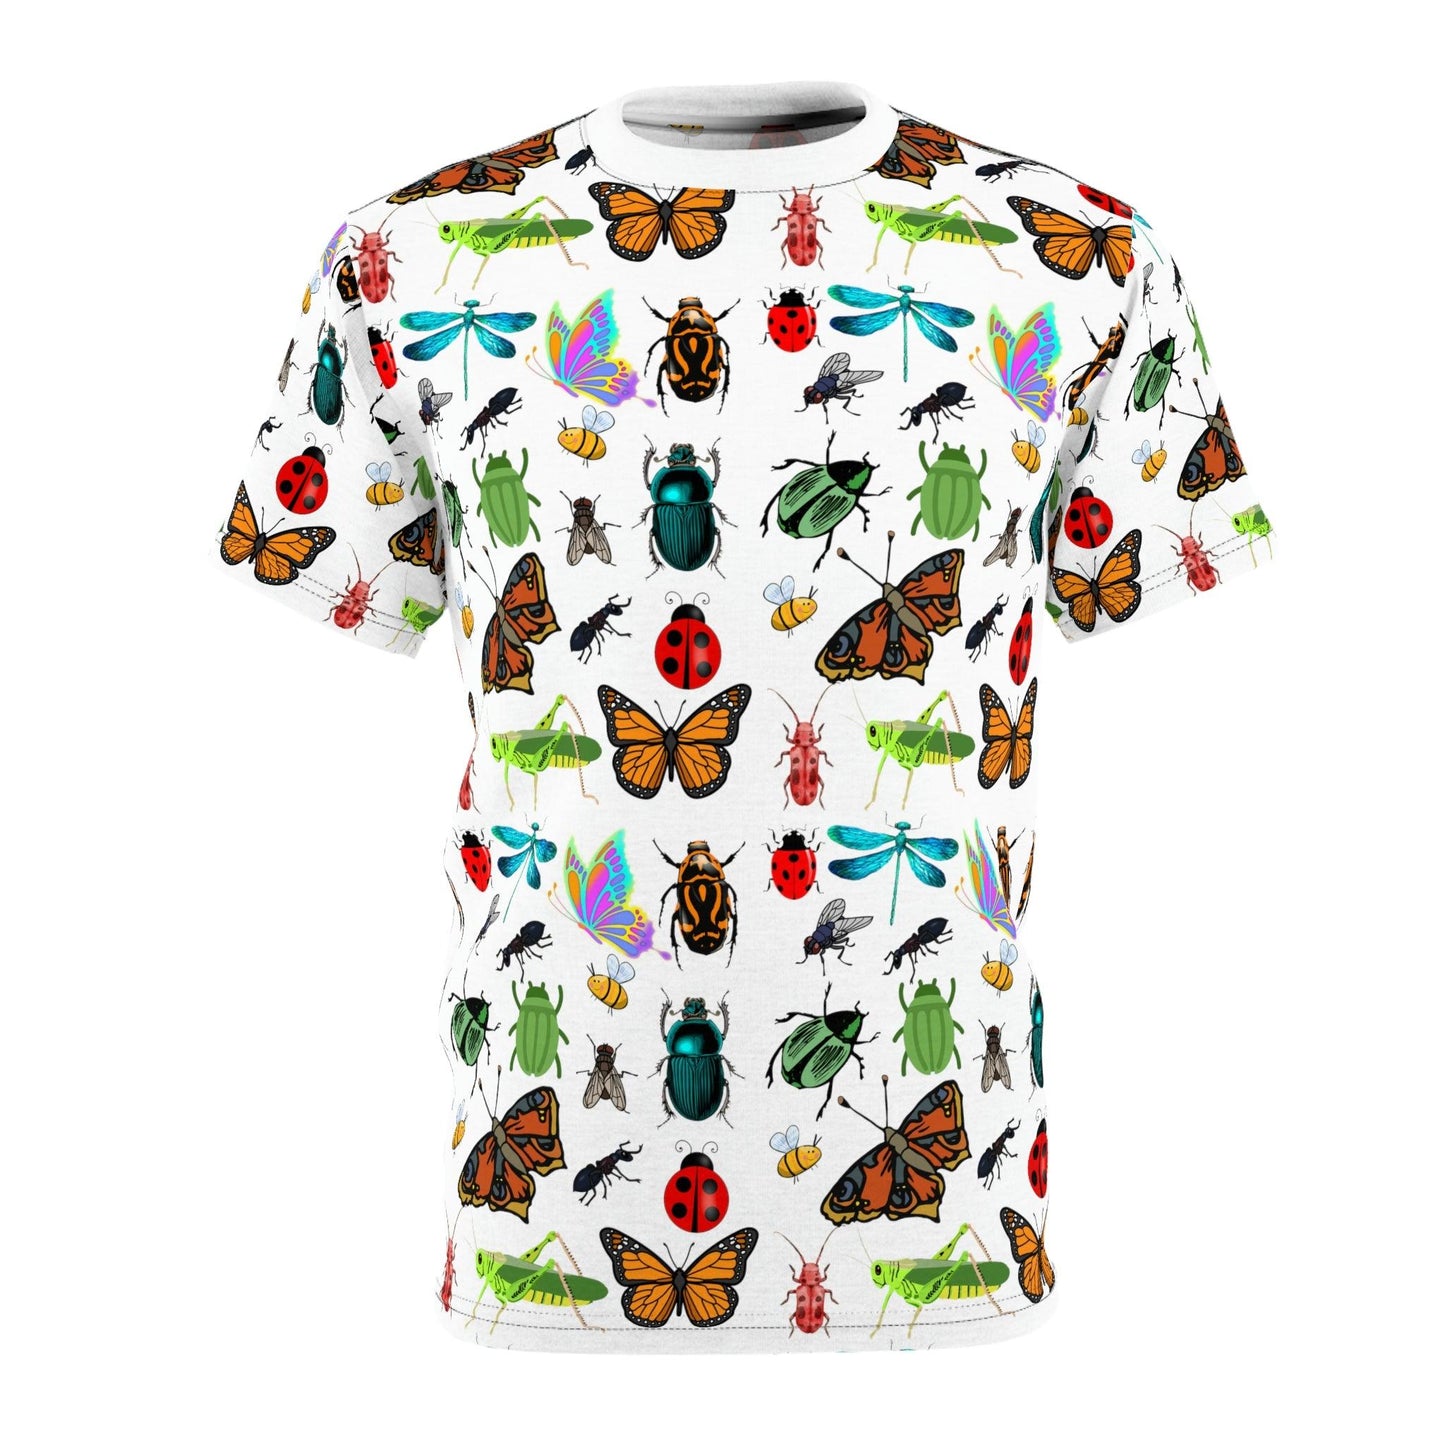 Bug shirt spring shirt butterfly shirt colorful t-shirt Bug shirt Butterfly tee, insect shirt, entomology shirt, lady bug shirt,